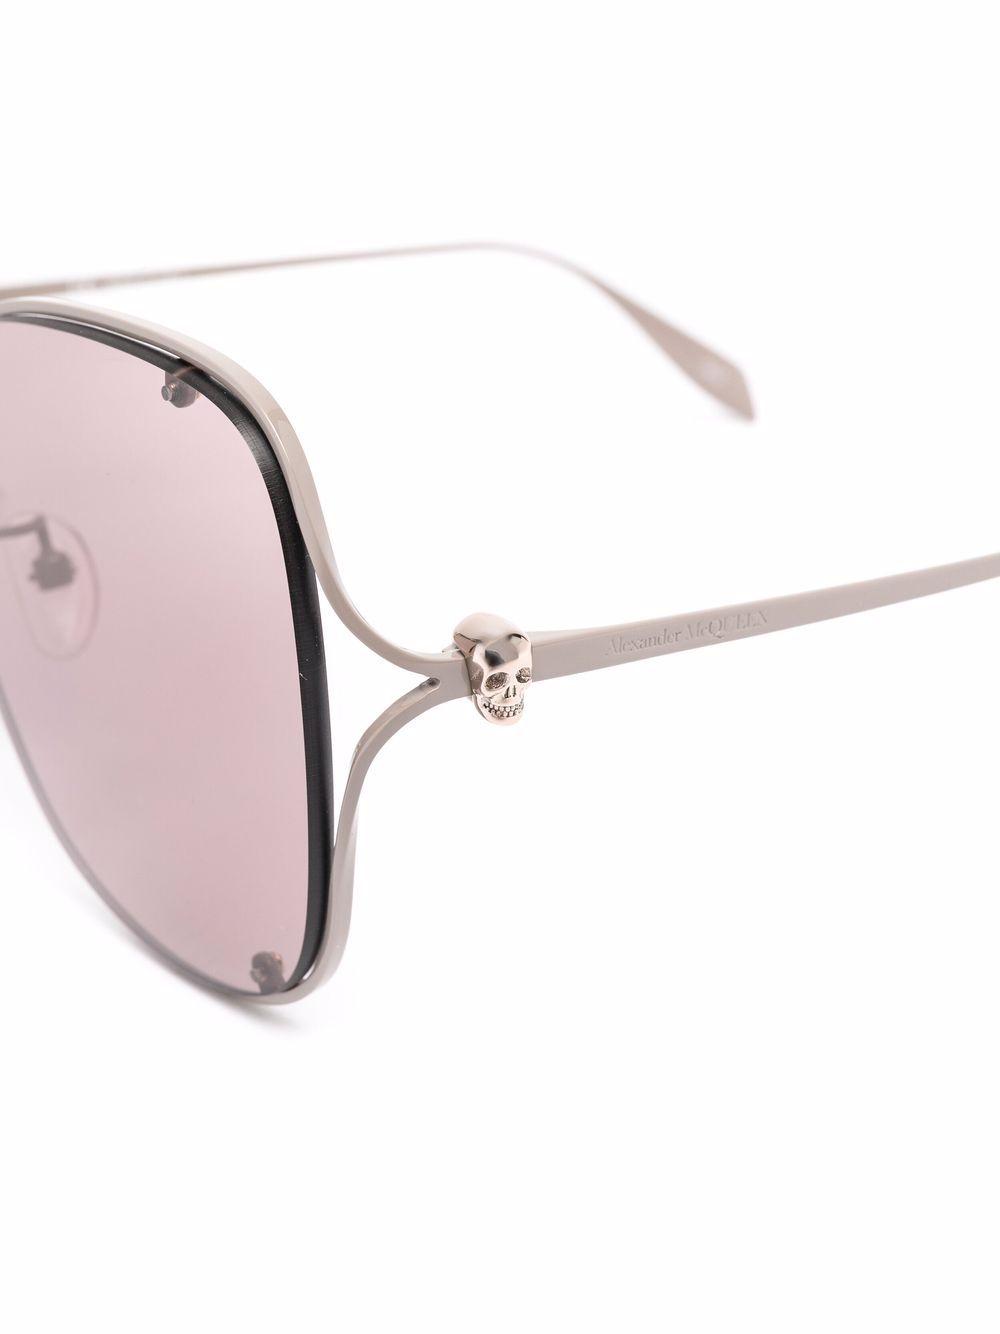 Alexander McQueen Synthetic Sunglasses Beige in Brown Womens Sunglasses Alexander McQueen Sunglasses 